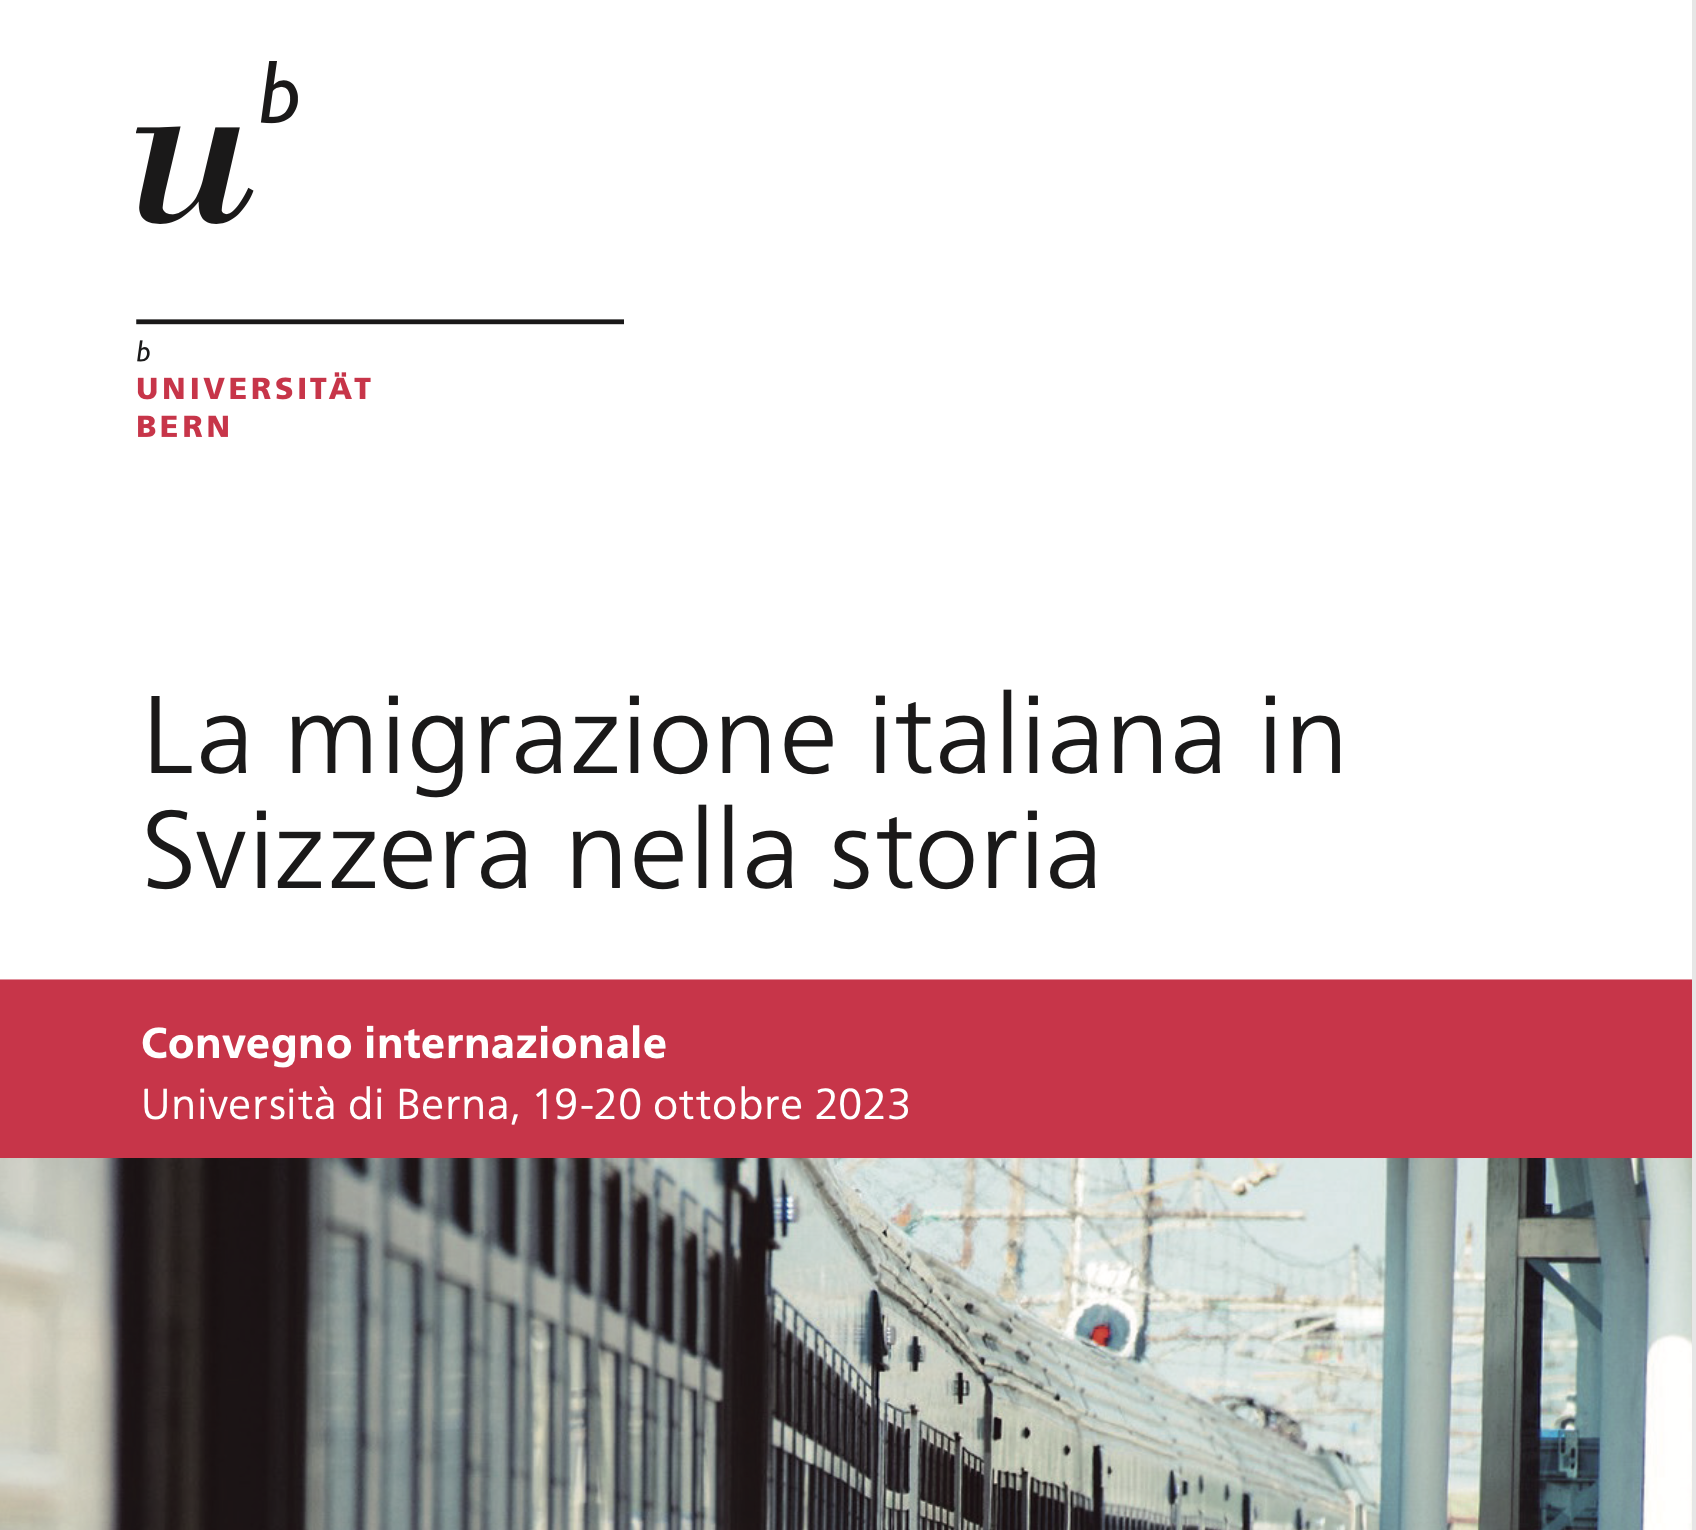 Convegno internazionale: La migrazione italiana in Svizzera nella storia